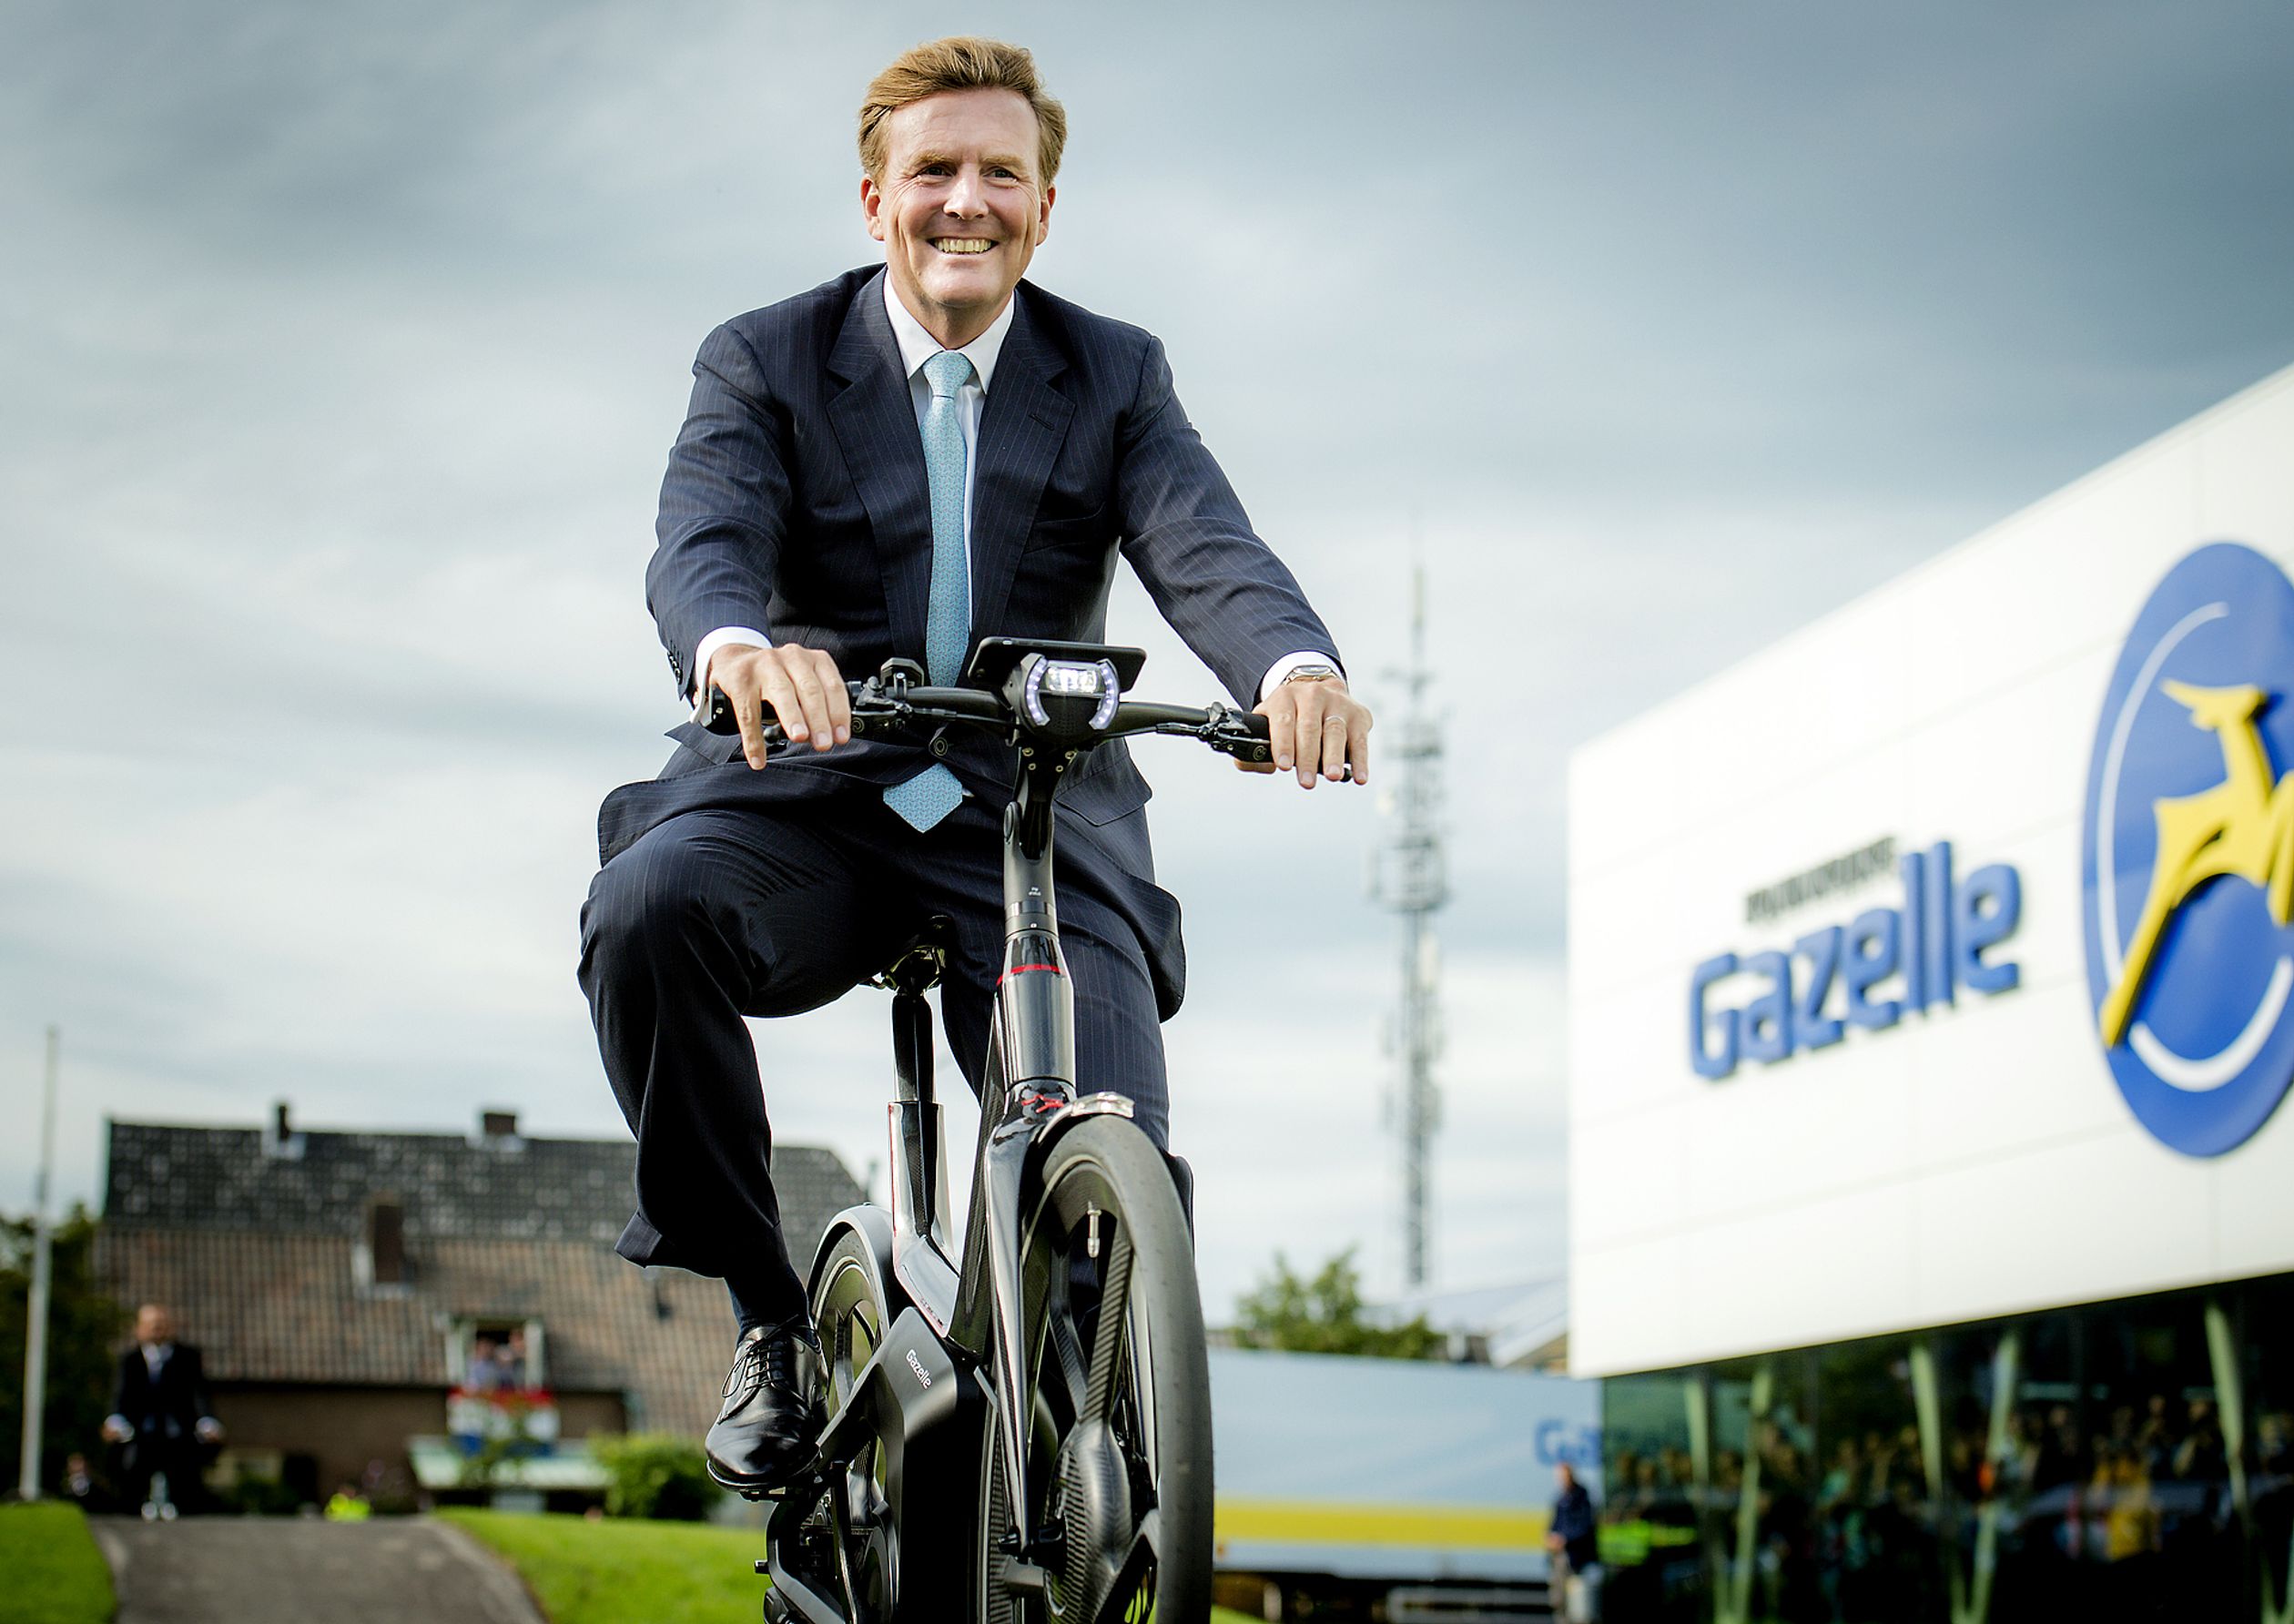 Koning Willem-Alexander op de fiets tijdens de opening van een nieuwe fietsfabriek in 2015.